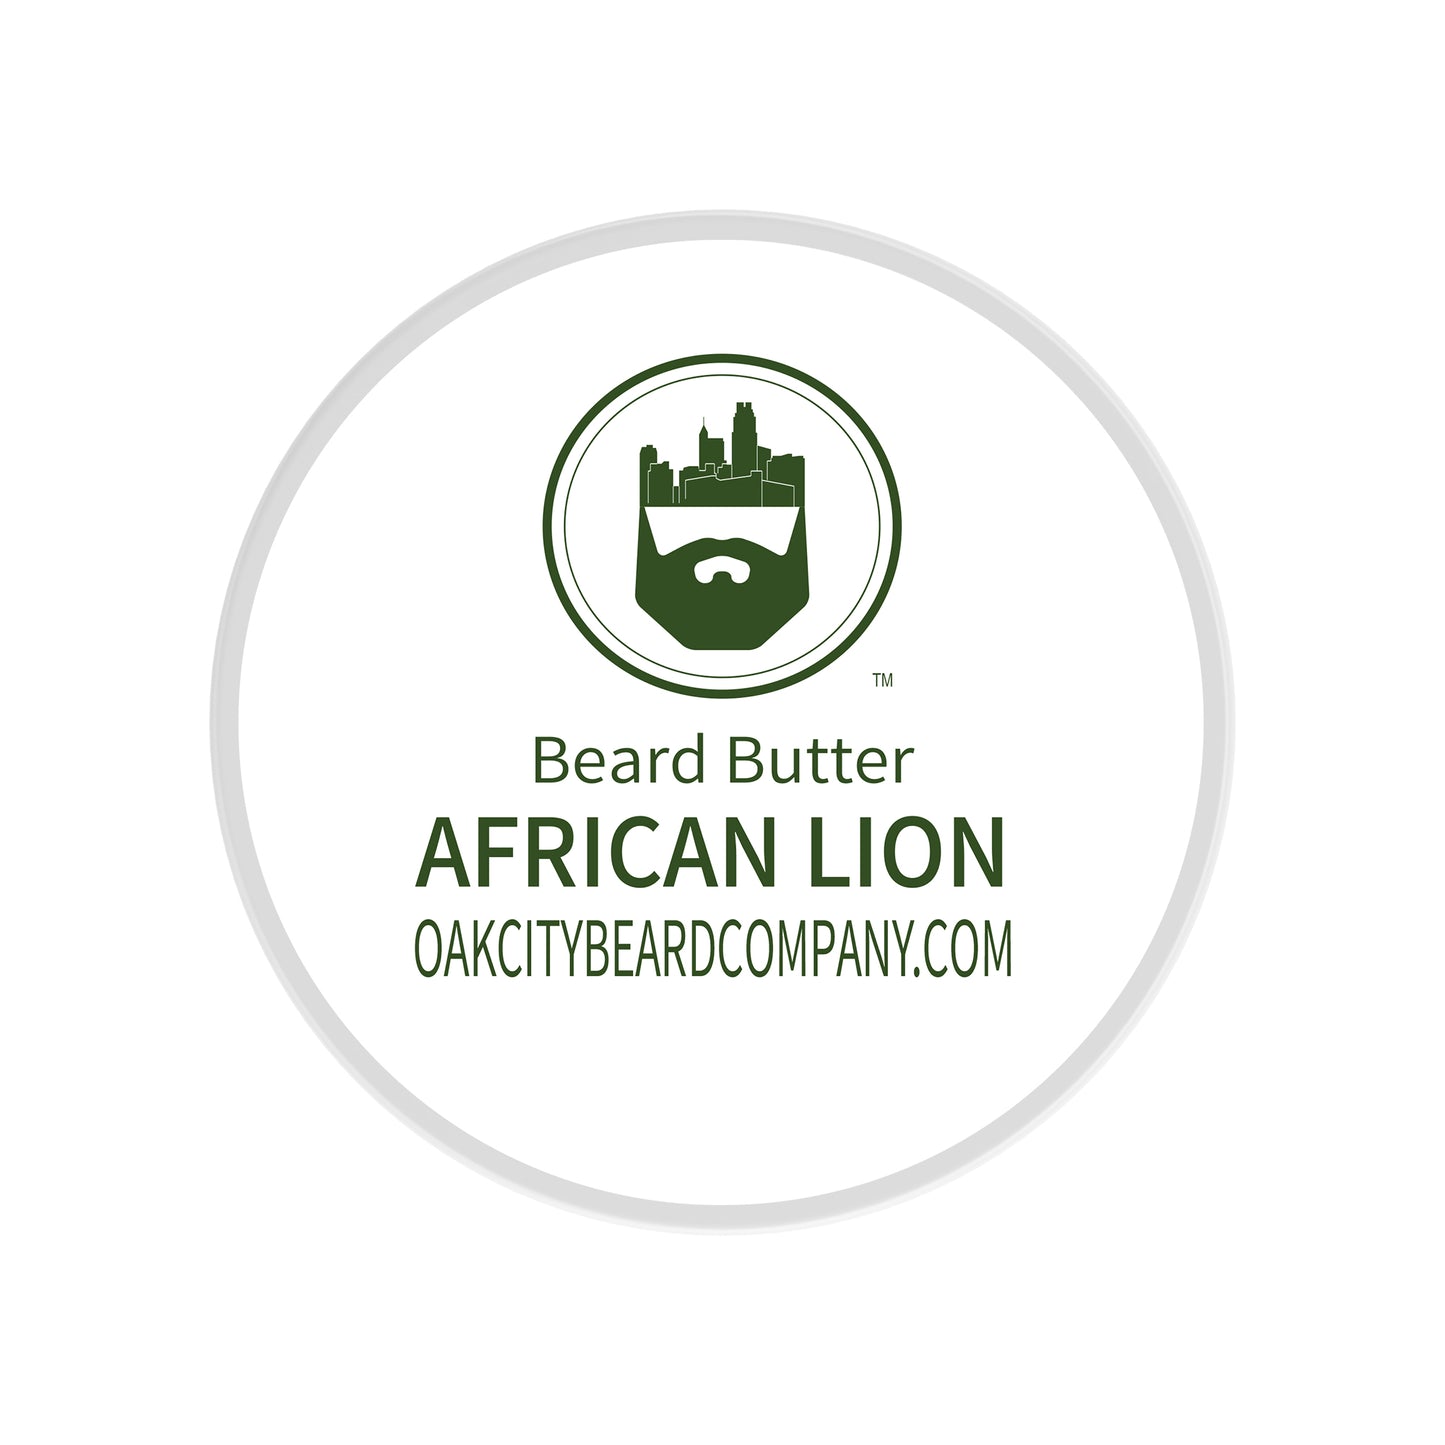 African Lion (Beard Butter) by Oak City Beard Company